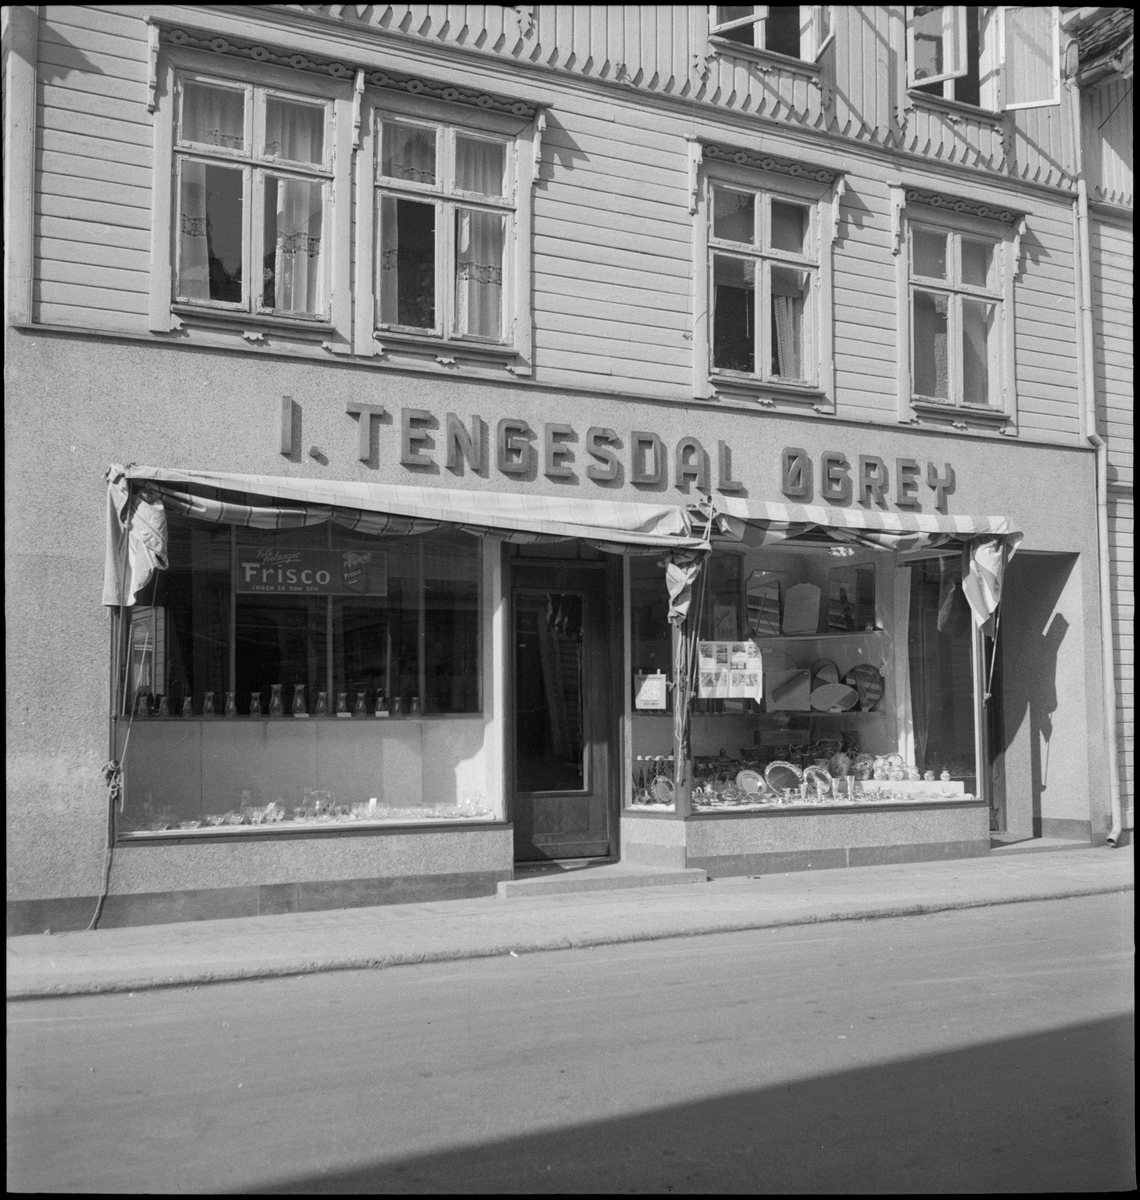 Kjøkkenbutikken "I. Tengesdal Øgrey" i Egersund. Det er glass, keramikk, serveringsfat og flagg i utstillingsviduene.